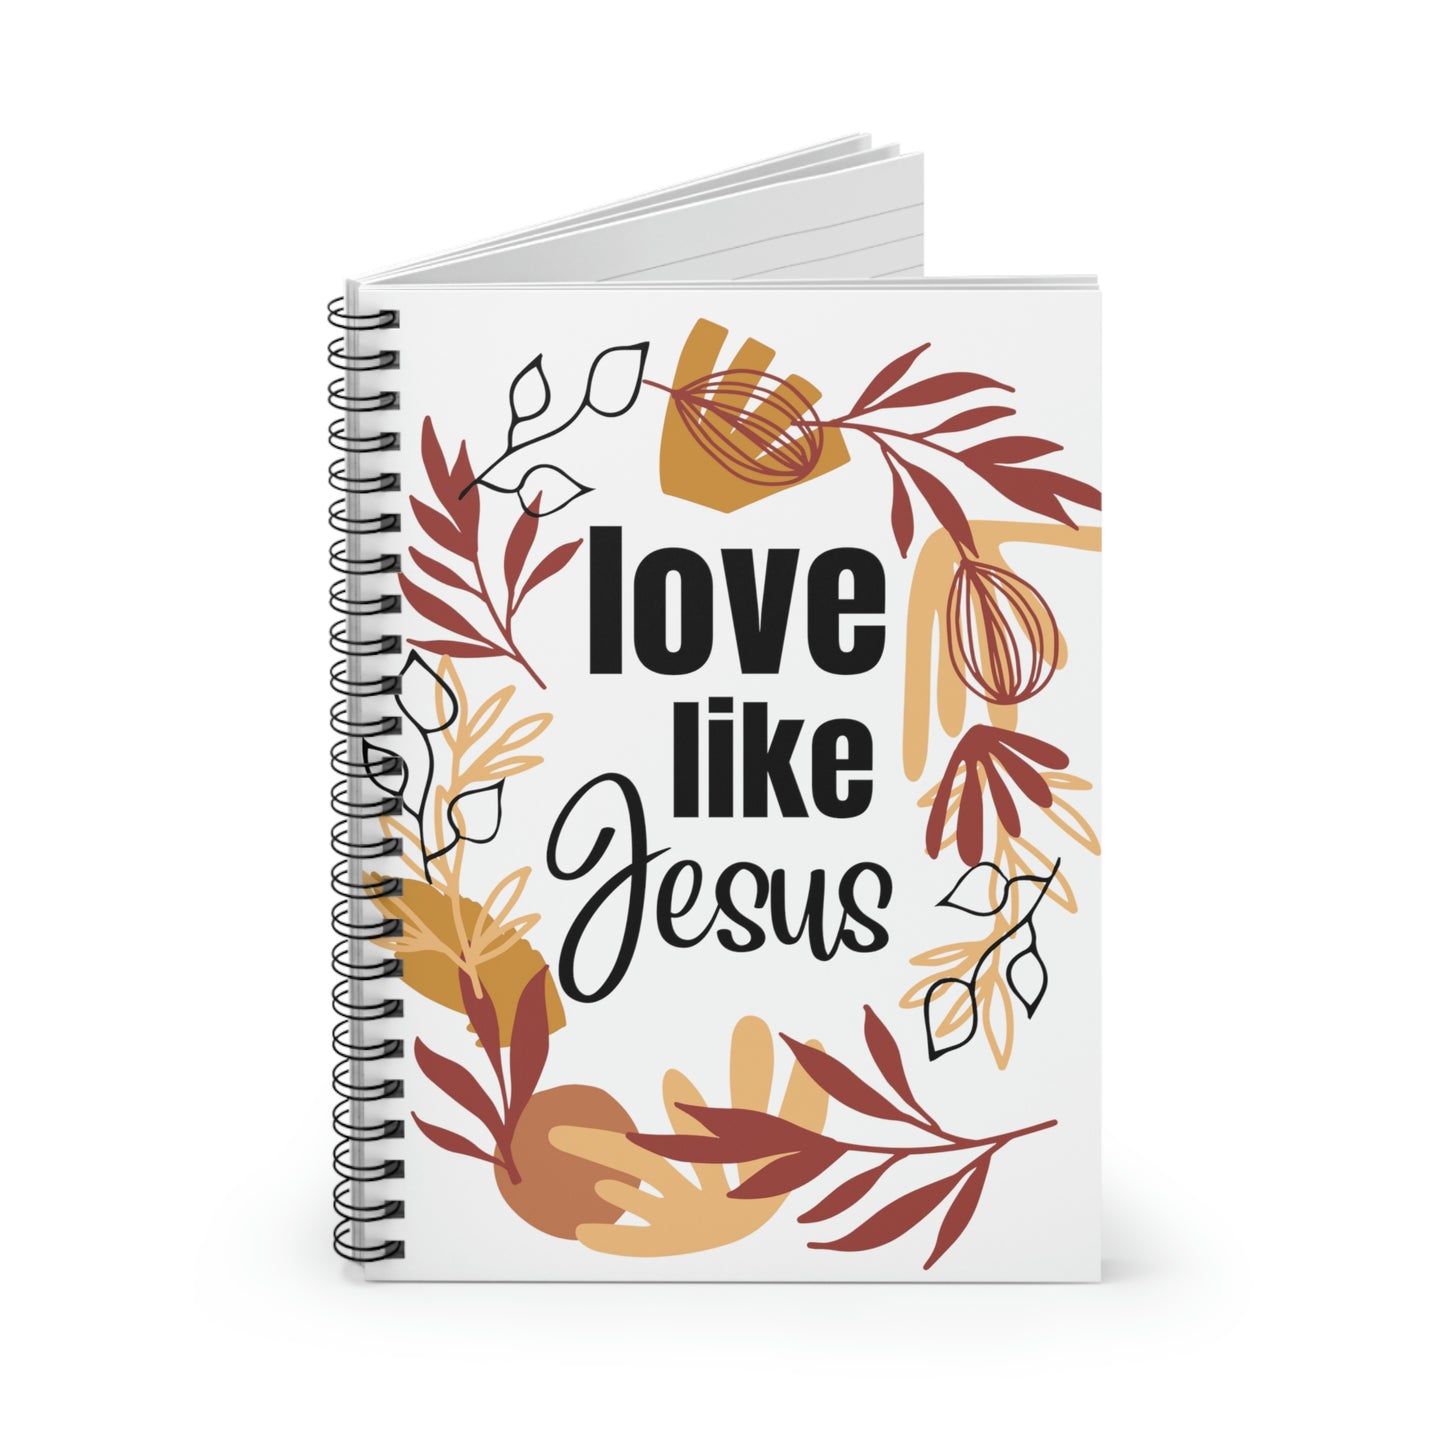 Christian Notebook, Bible Journal, Prayer Journal, Love Like Jesus, Christian Merch Spiral Notebook - Ruled Line